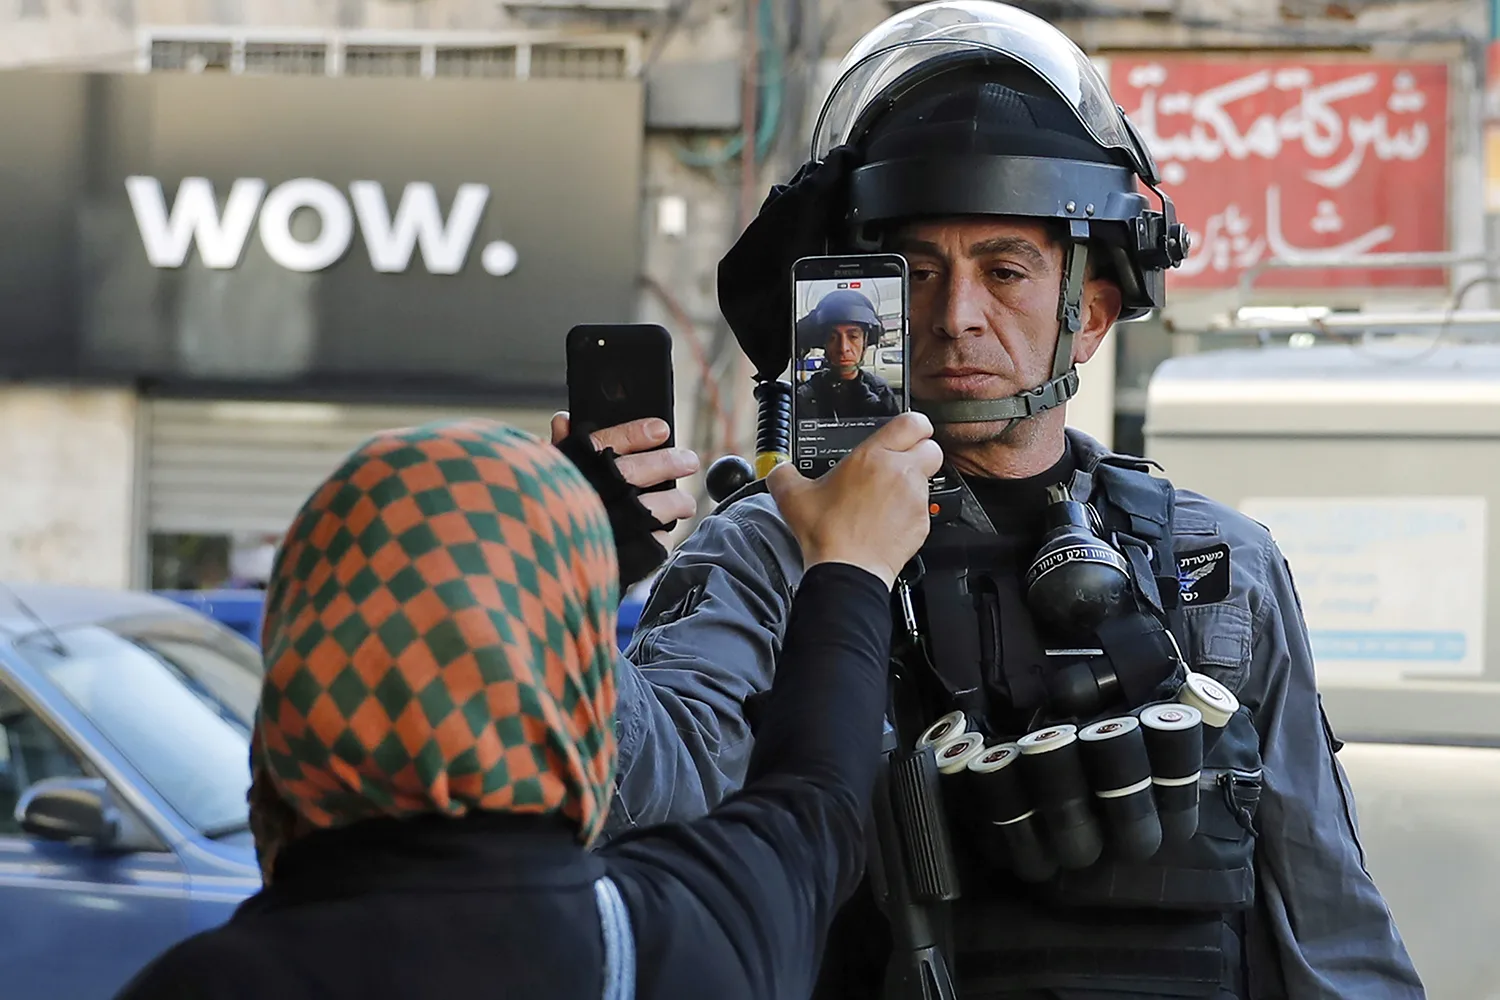 فلسطينية تلتقط صورة لأحد أفراد قوات الأمن الإسرائيلية الذي كان بصدد التقاط صورة لها دون إذن في أحد شوارع القدس، 16 كانون الأول/ ديسمبر 2017.